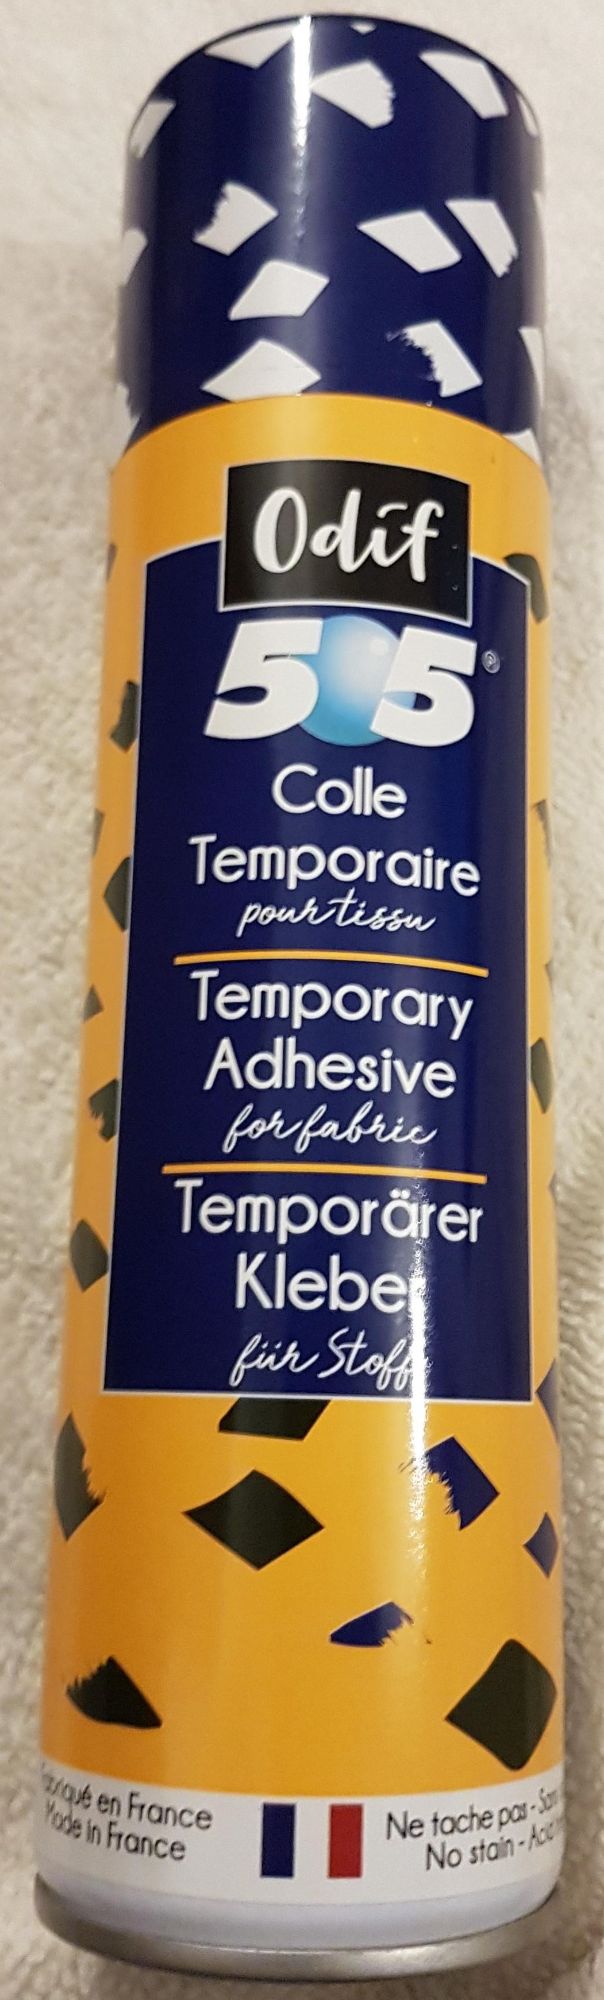 Odif temporary spray adhesive adhesive